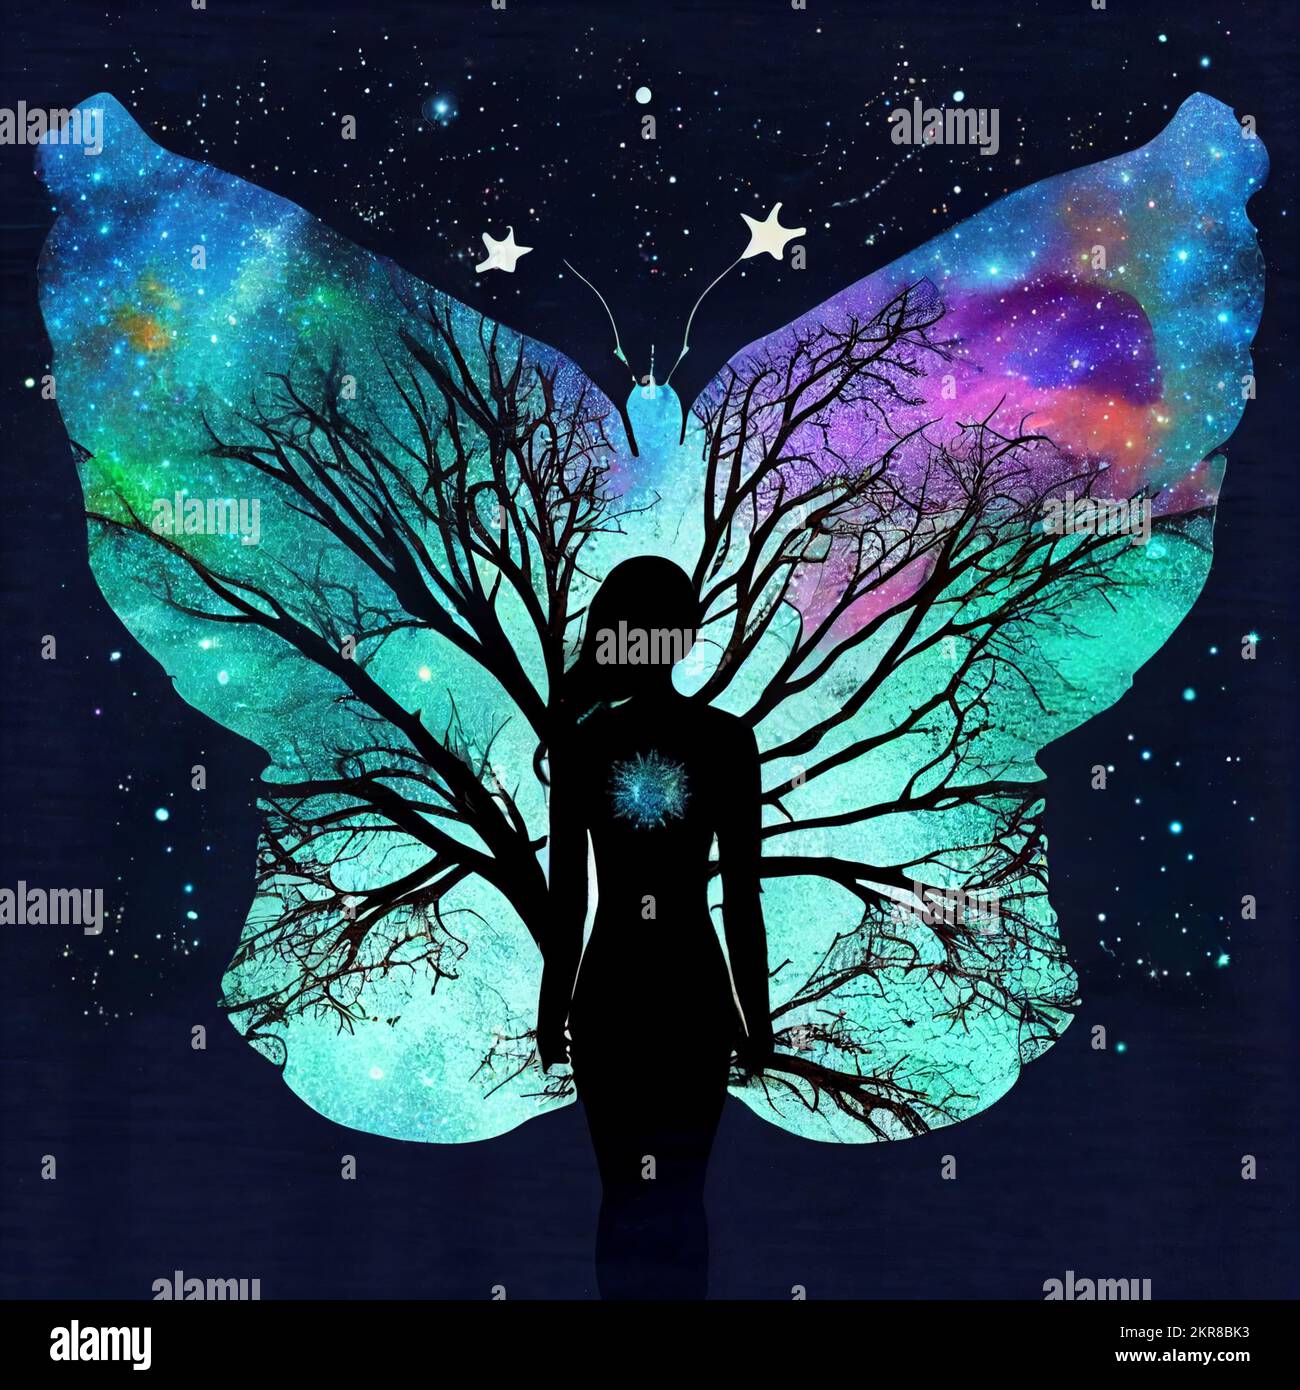 Una mujer mezclada con un árbol, con alas de hadas siluetas sobre nebulosas y cielos estrellados Foto de stock